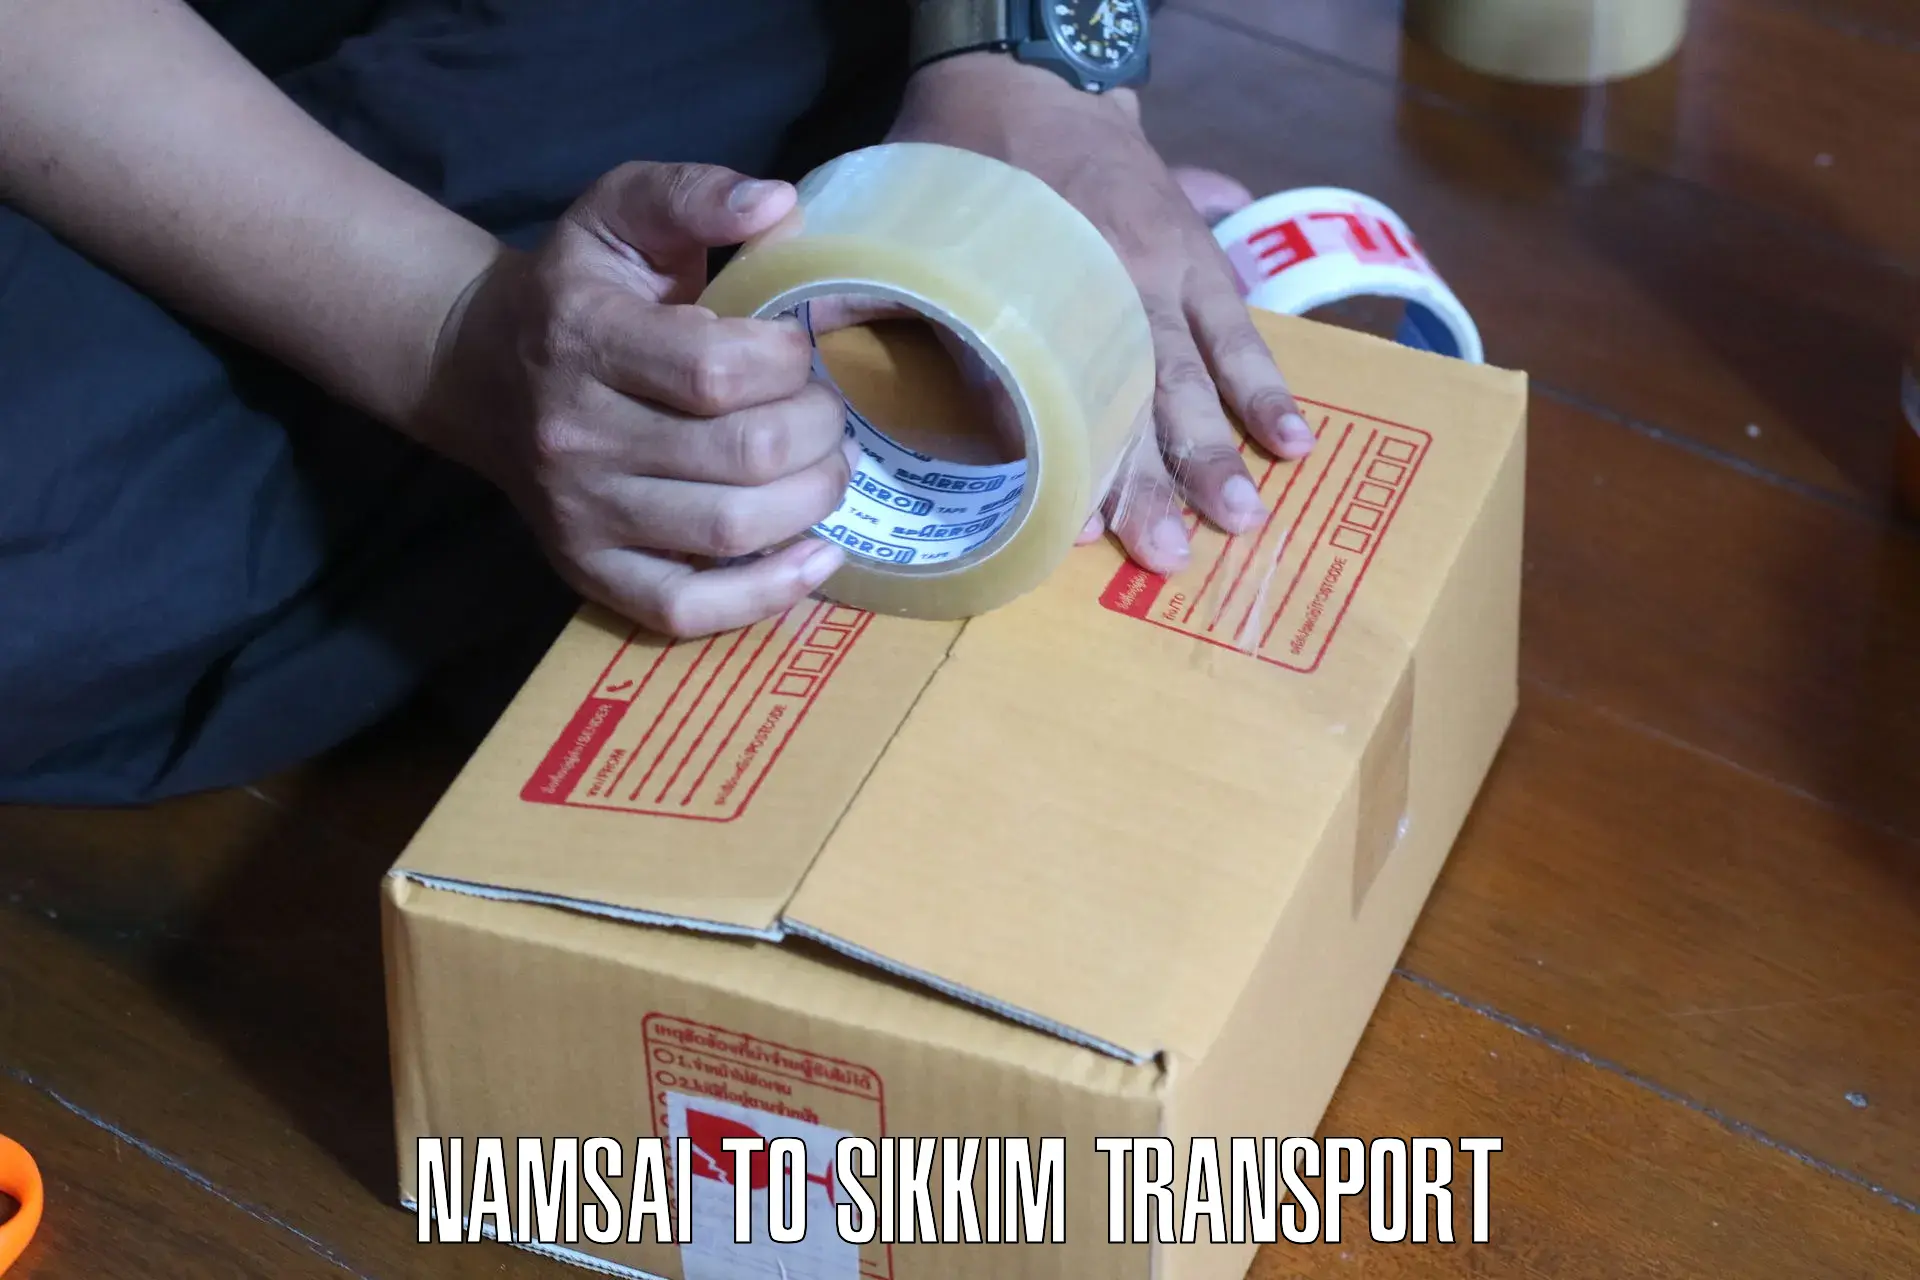 Daily transport service Namsai to Mangan